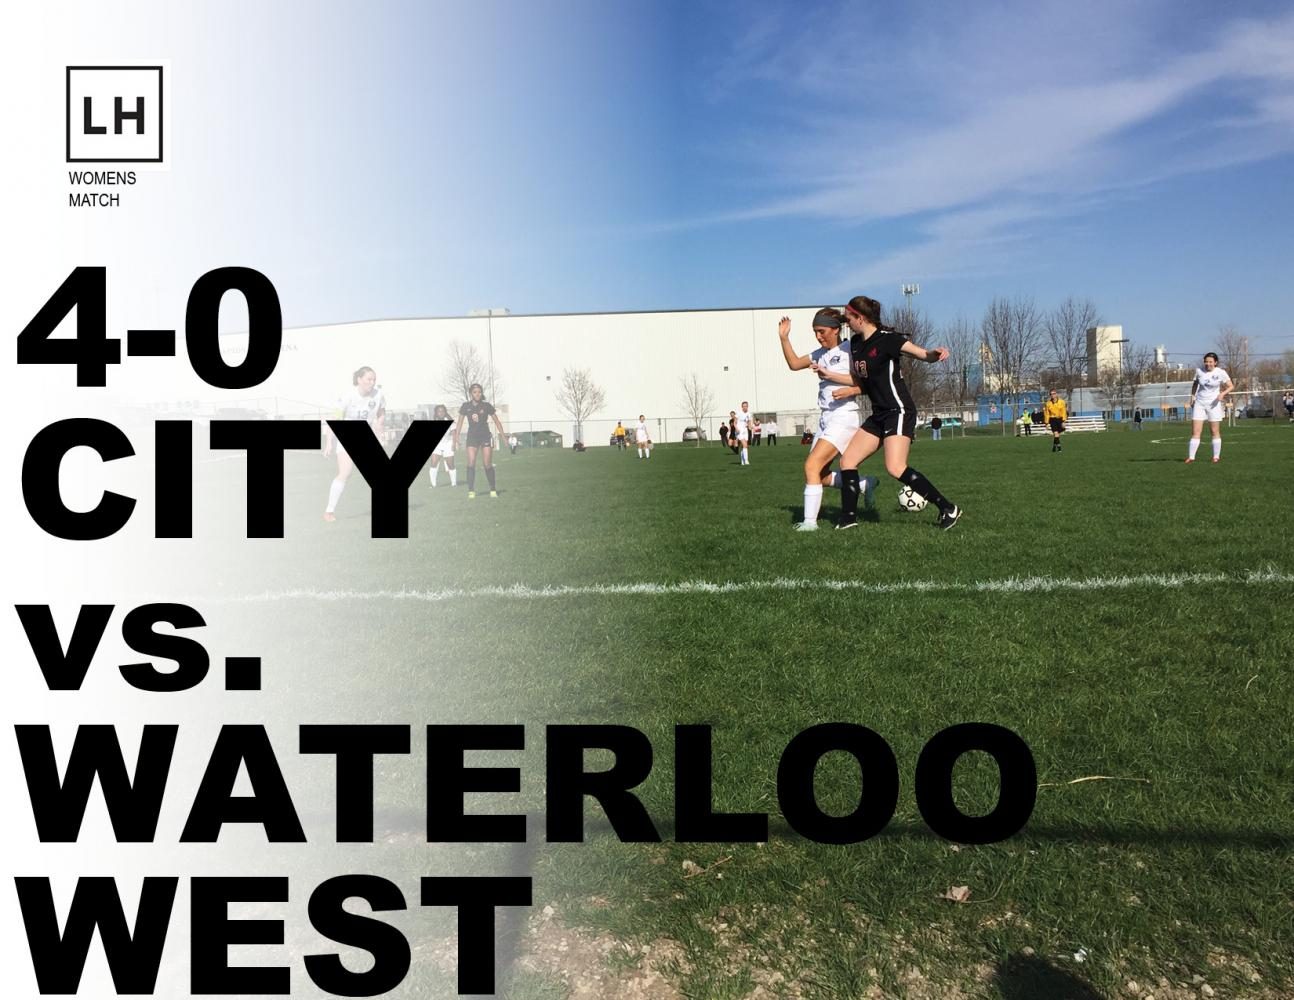 Waterloo West Falls 4-0 to Little Hawks